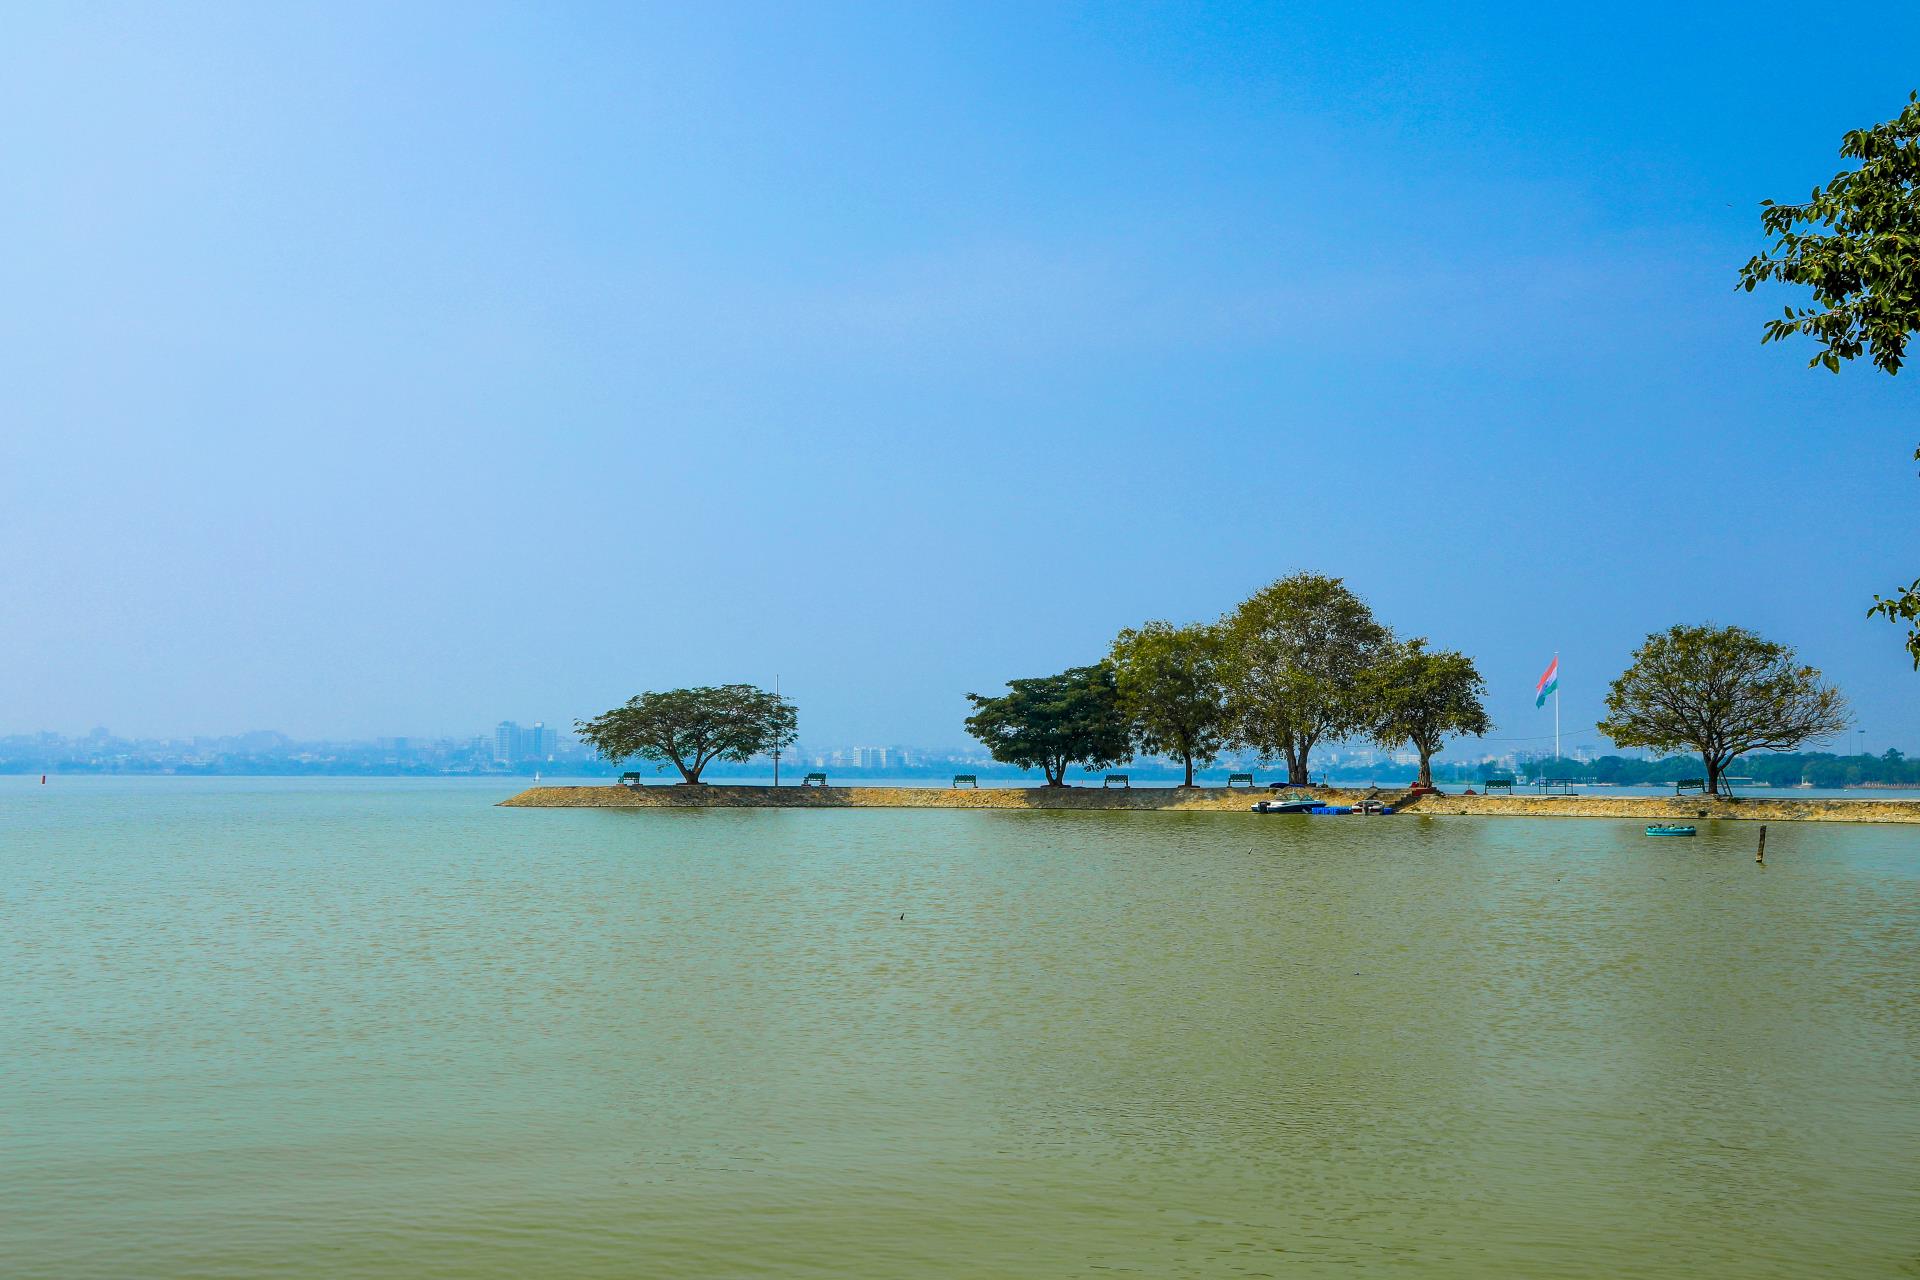 Hussain Sagar lake